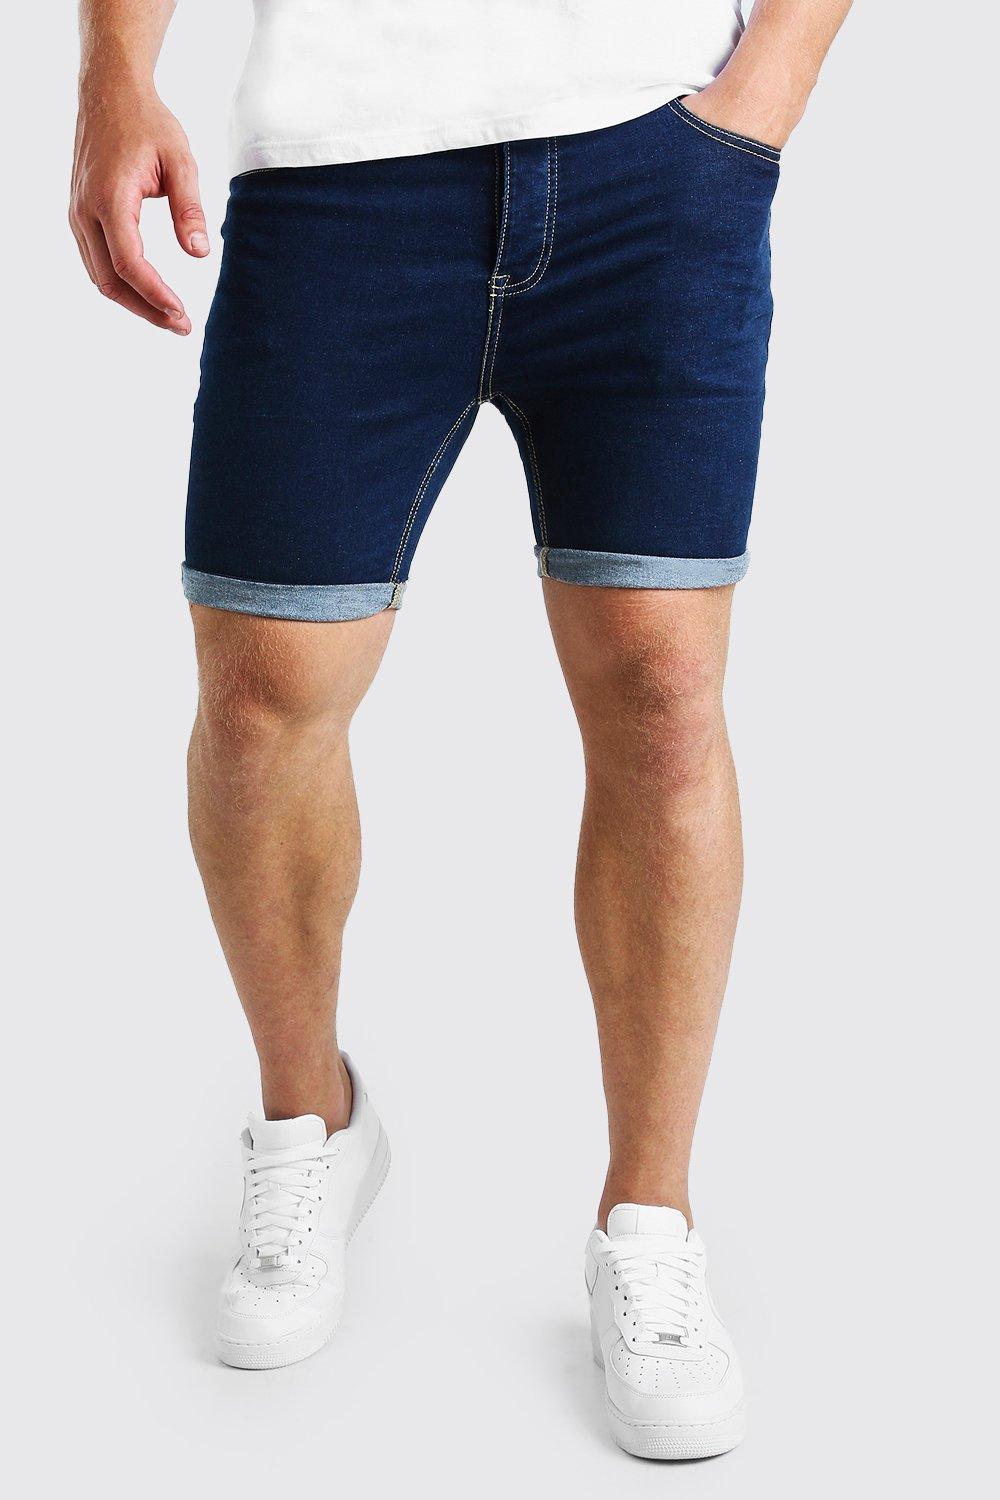 denim shorts australia